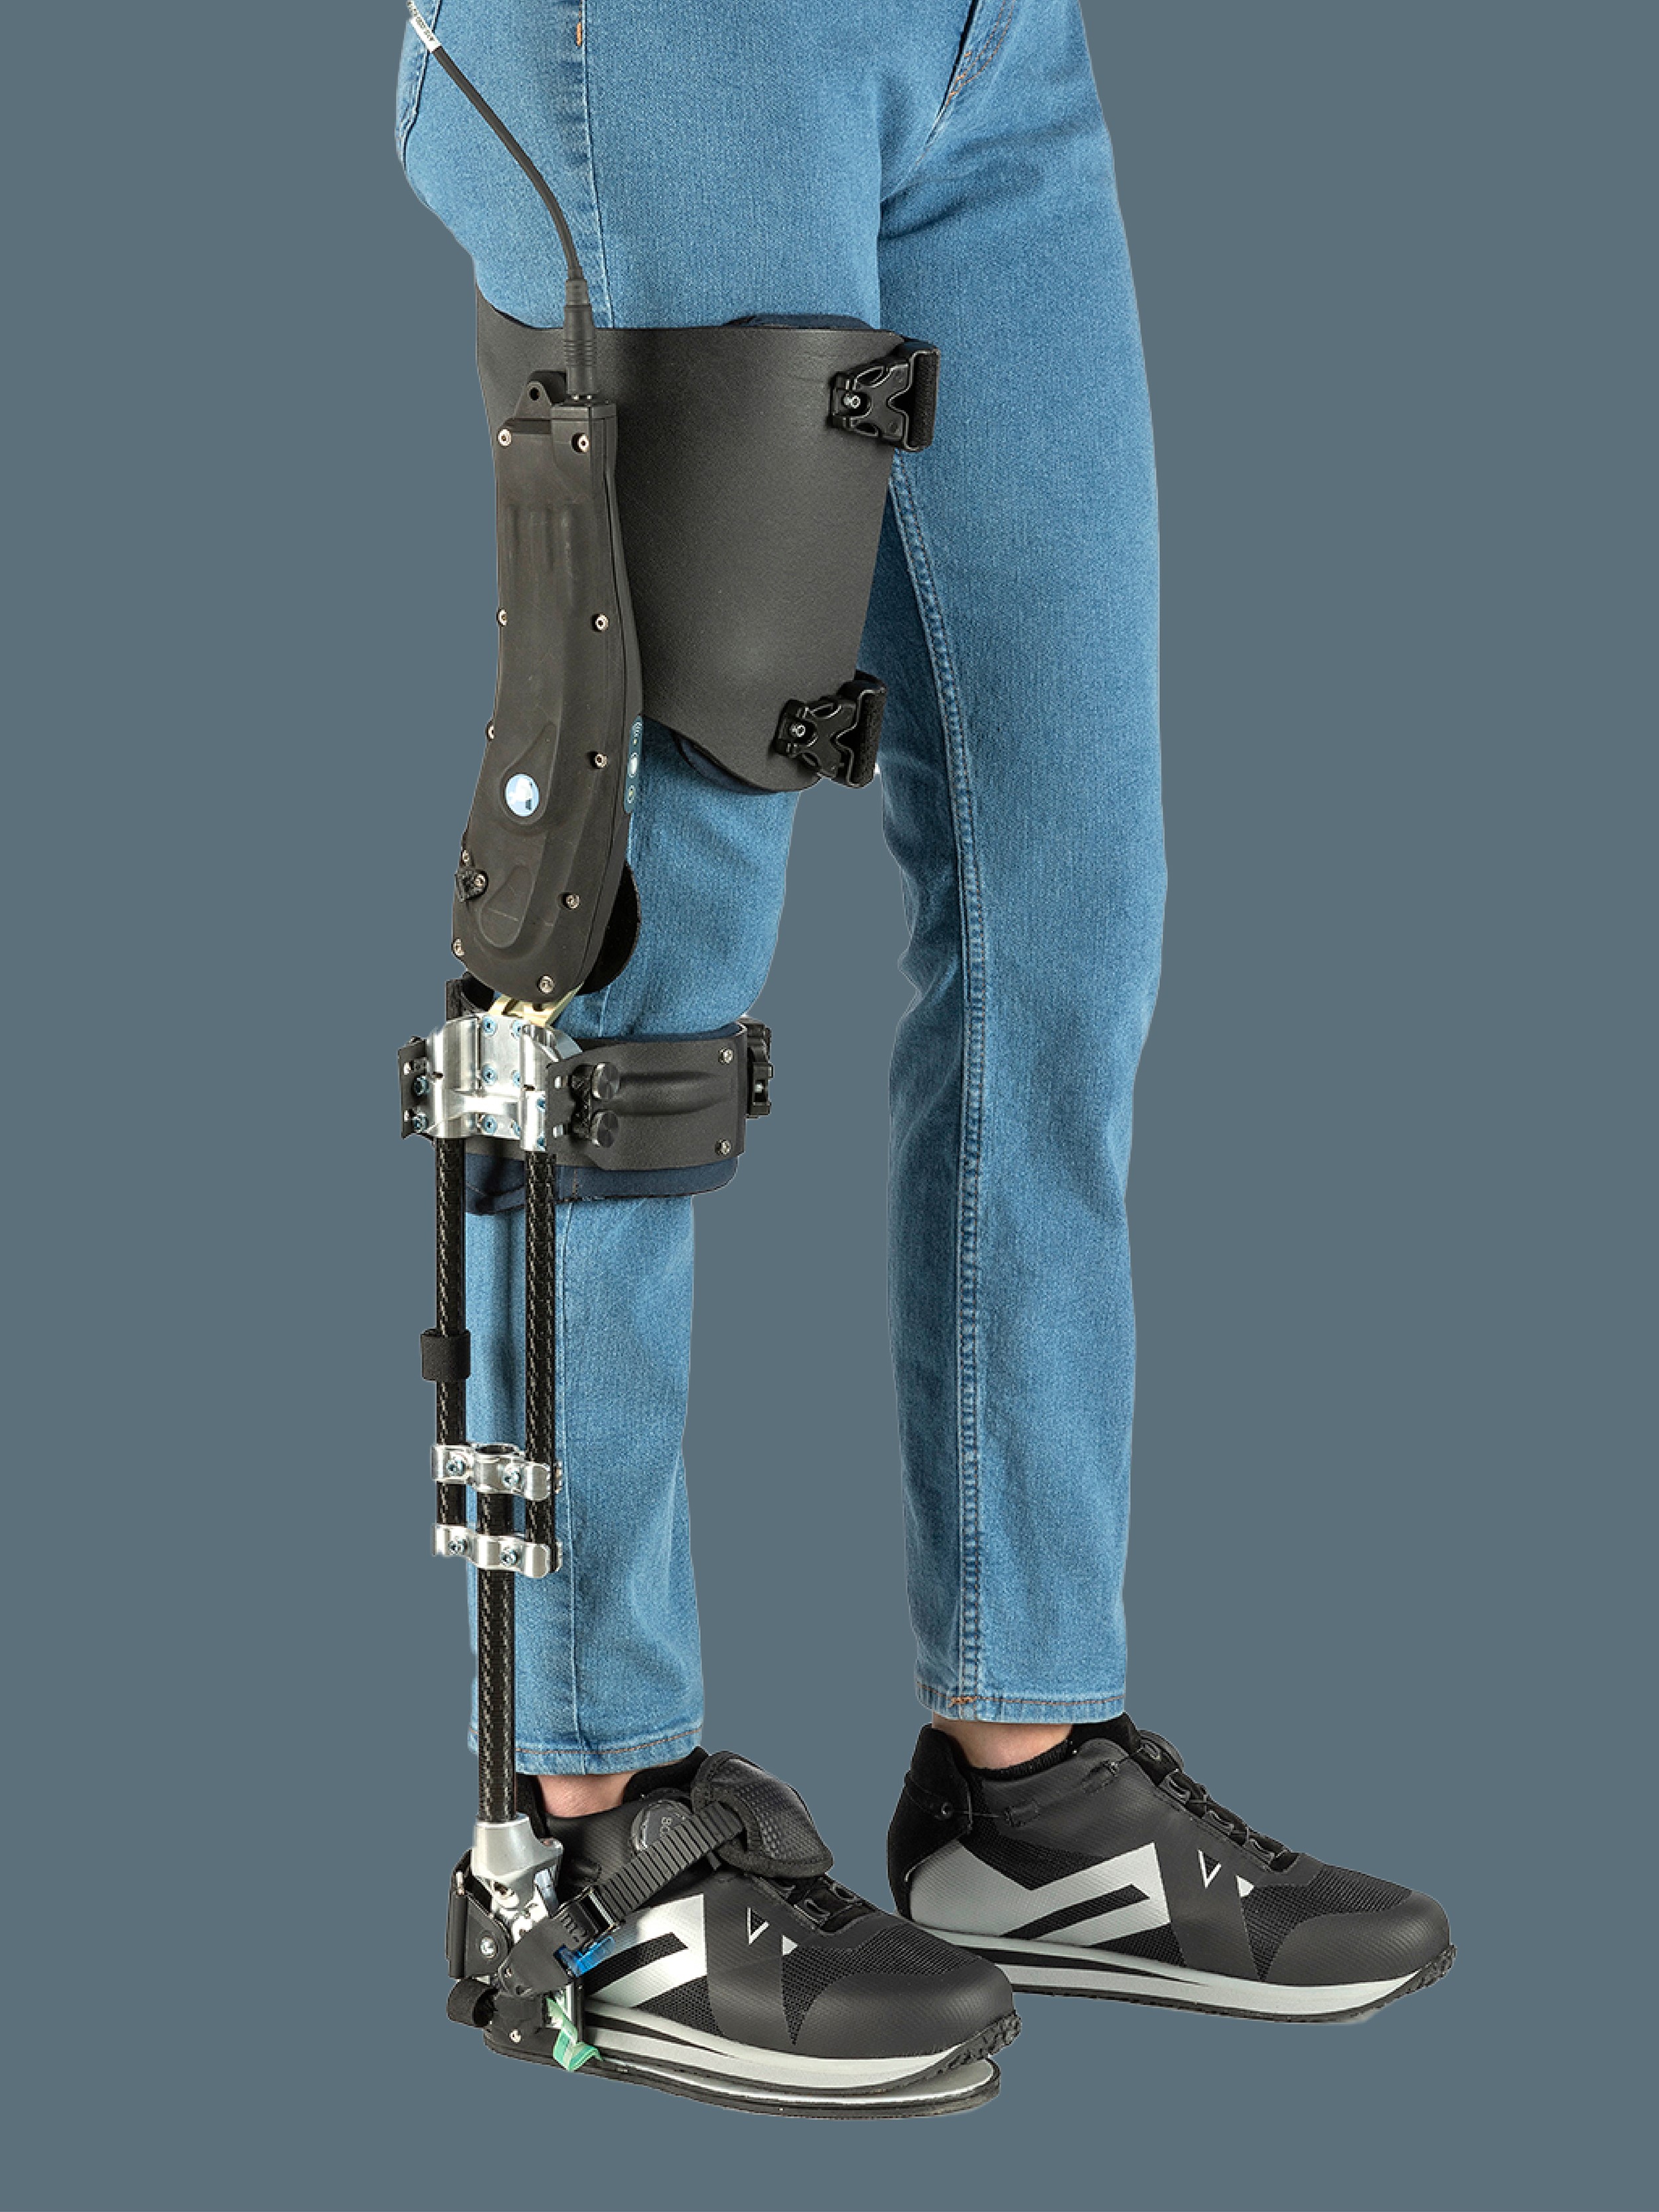 >Agilik, l’ortesi robotica che aumenta la mobilità personale 